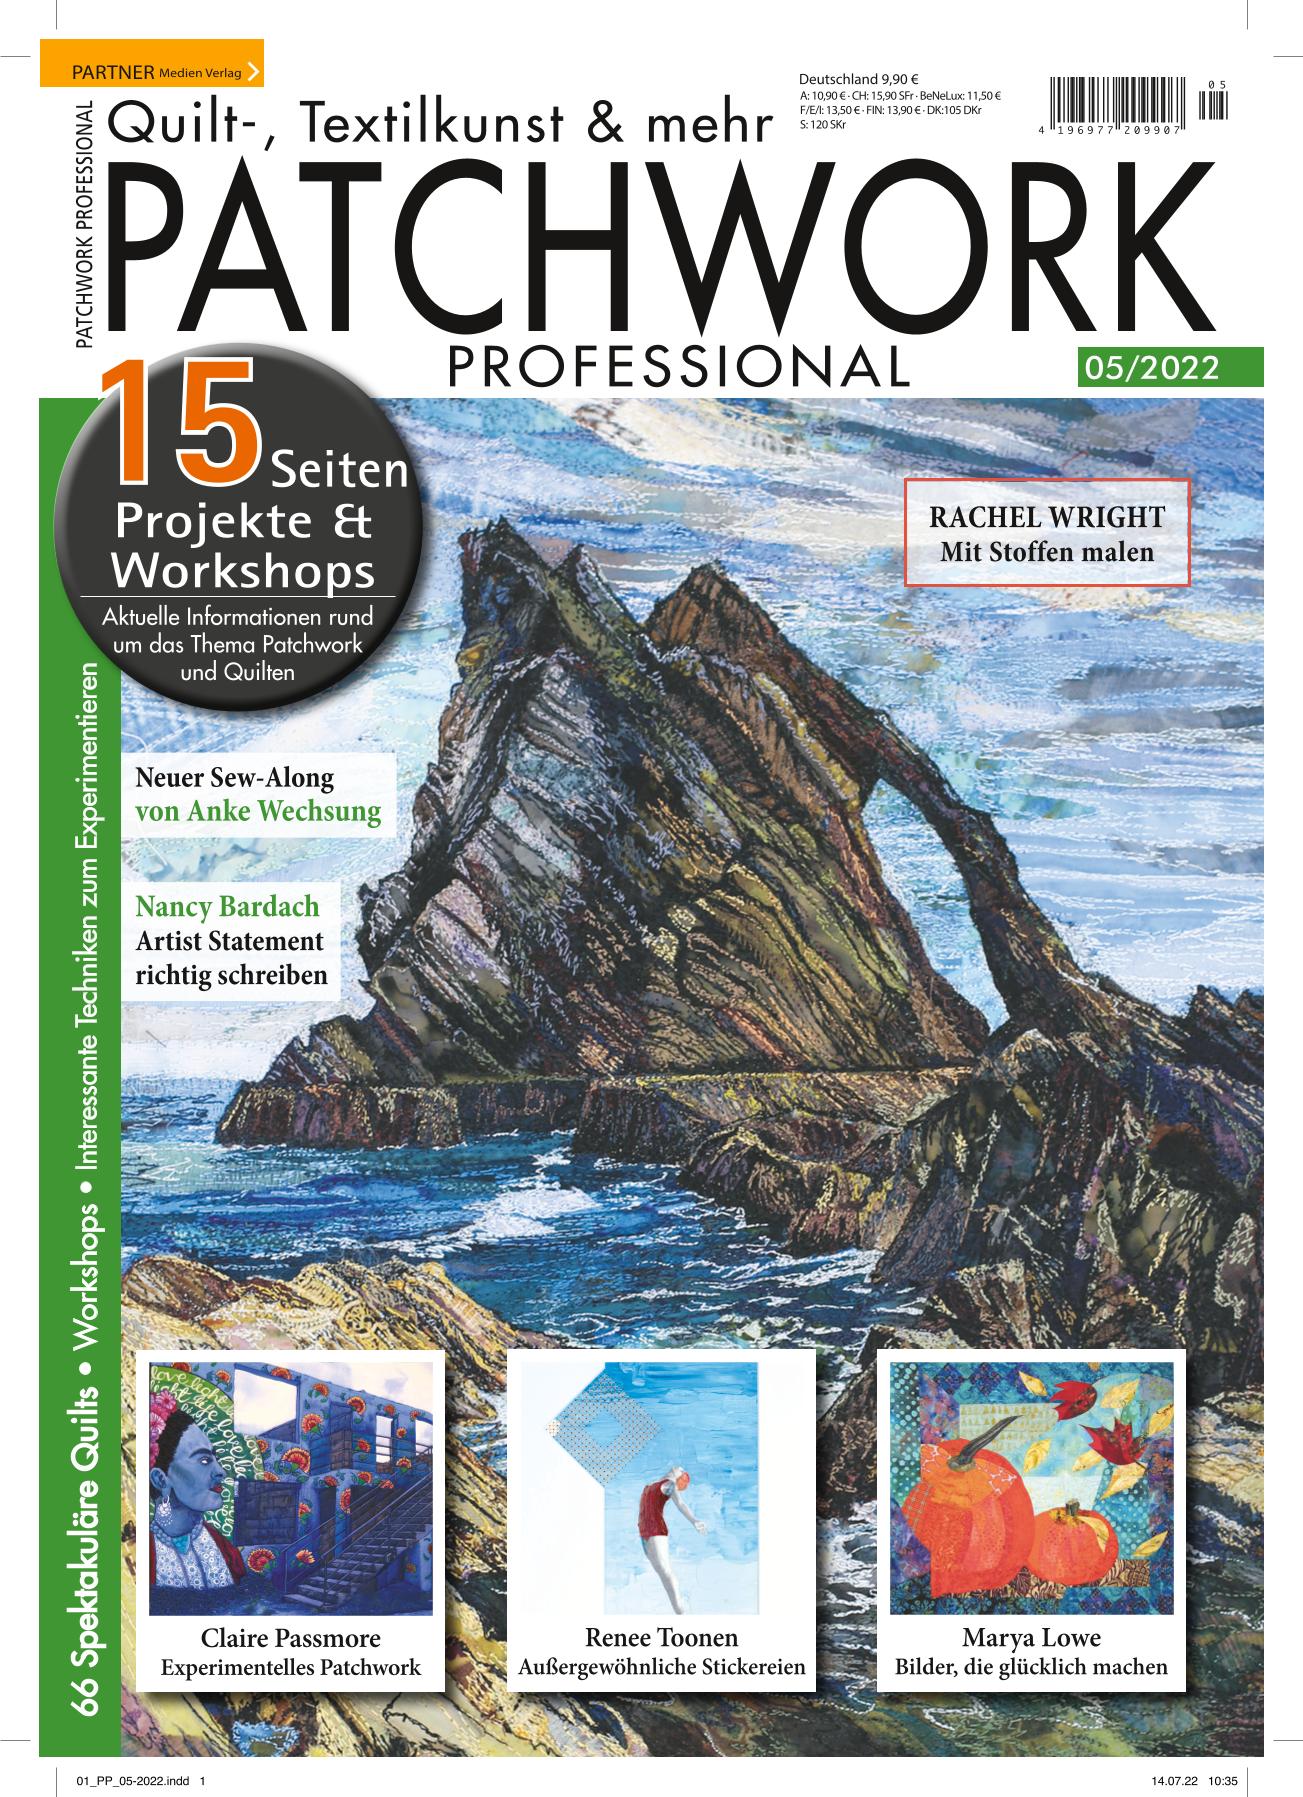 Patchwork Professional, aktuelles Heft, Patchwork, Quilten, Nähen, SPEZIAL Taschen, Anleitungen, Projekte, Zeitschrift, Magazin, Heft, 